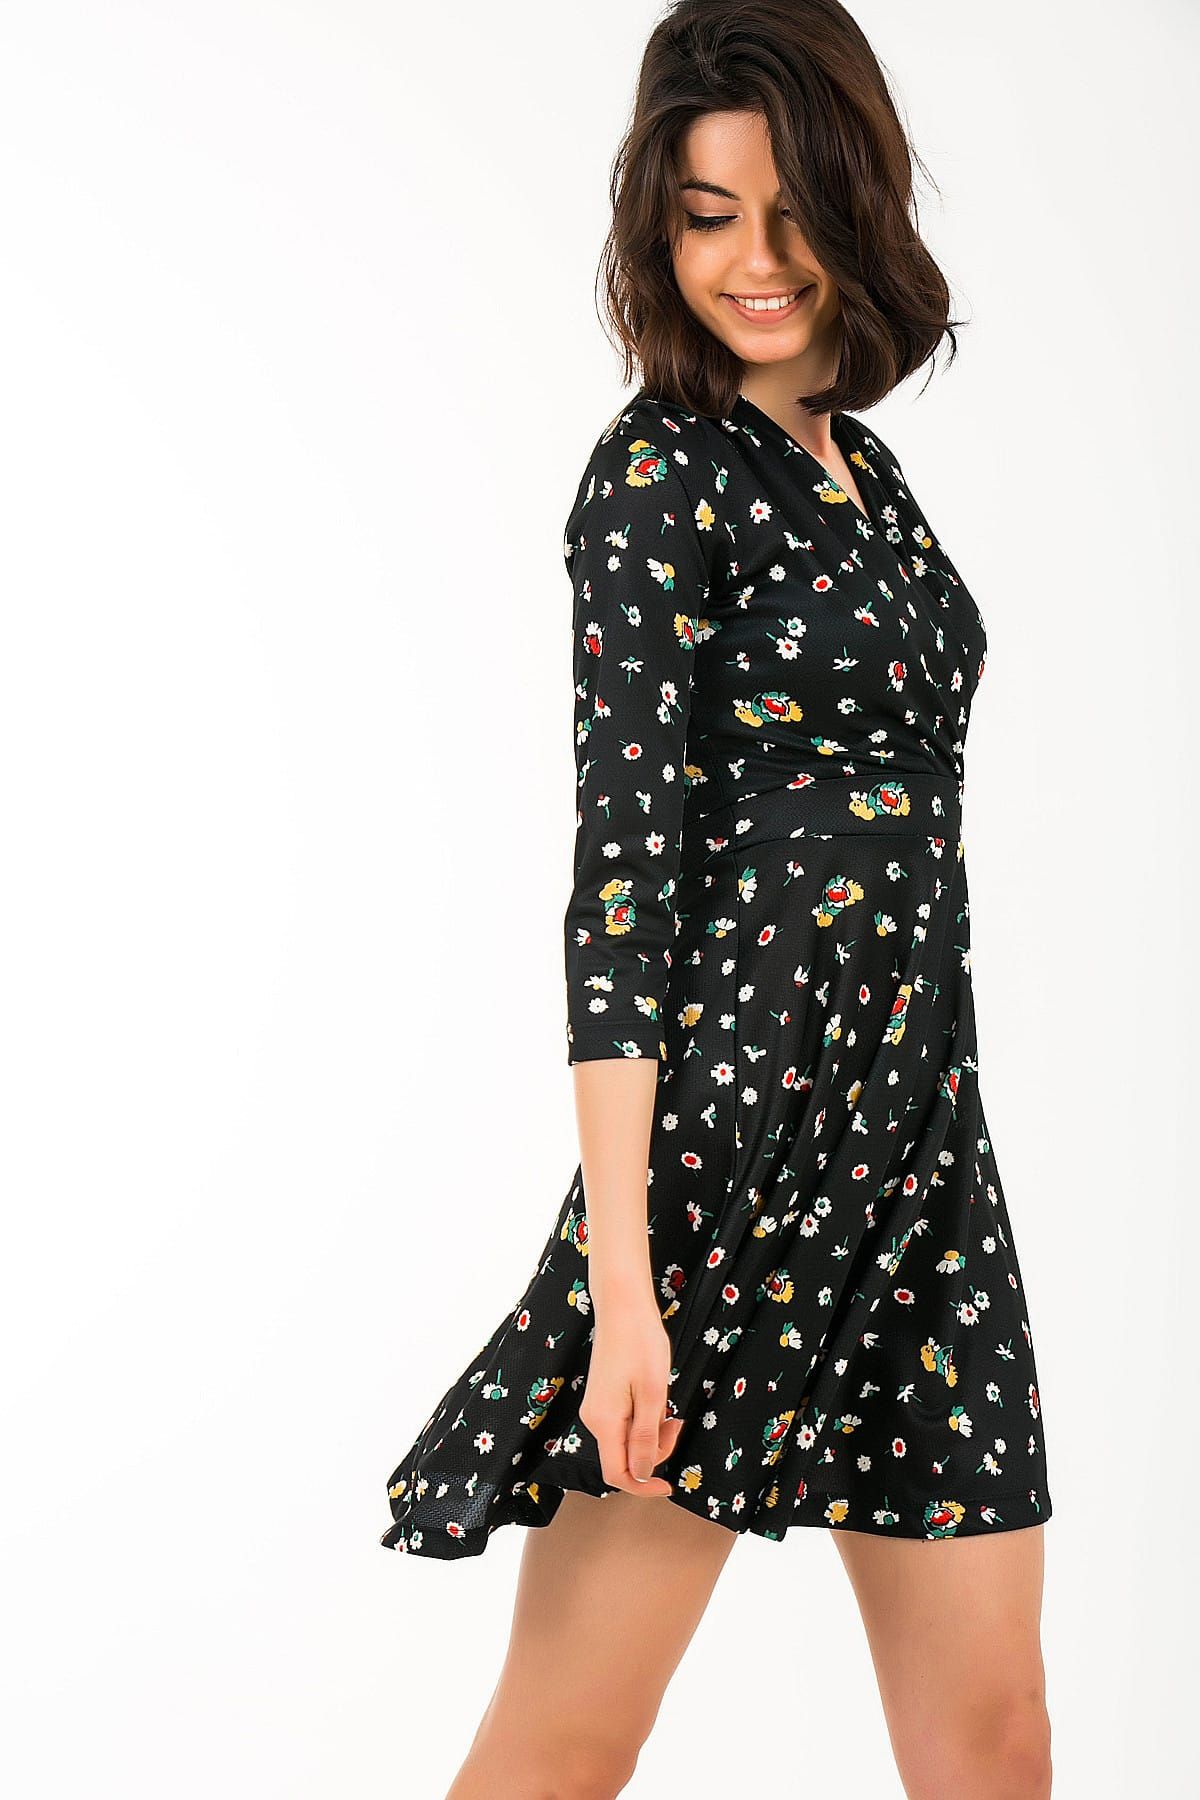 By Saygı Kadın Siyah Kruvaze Küçük Çiçek Desen Örme Krep Likra Elbise S-19Y3500019